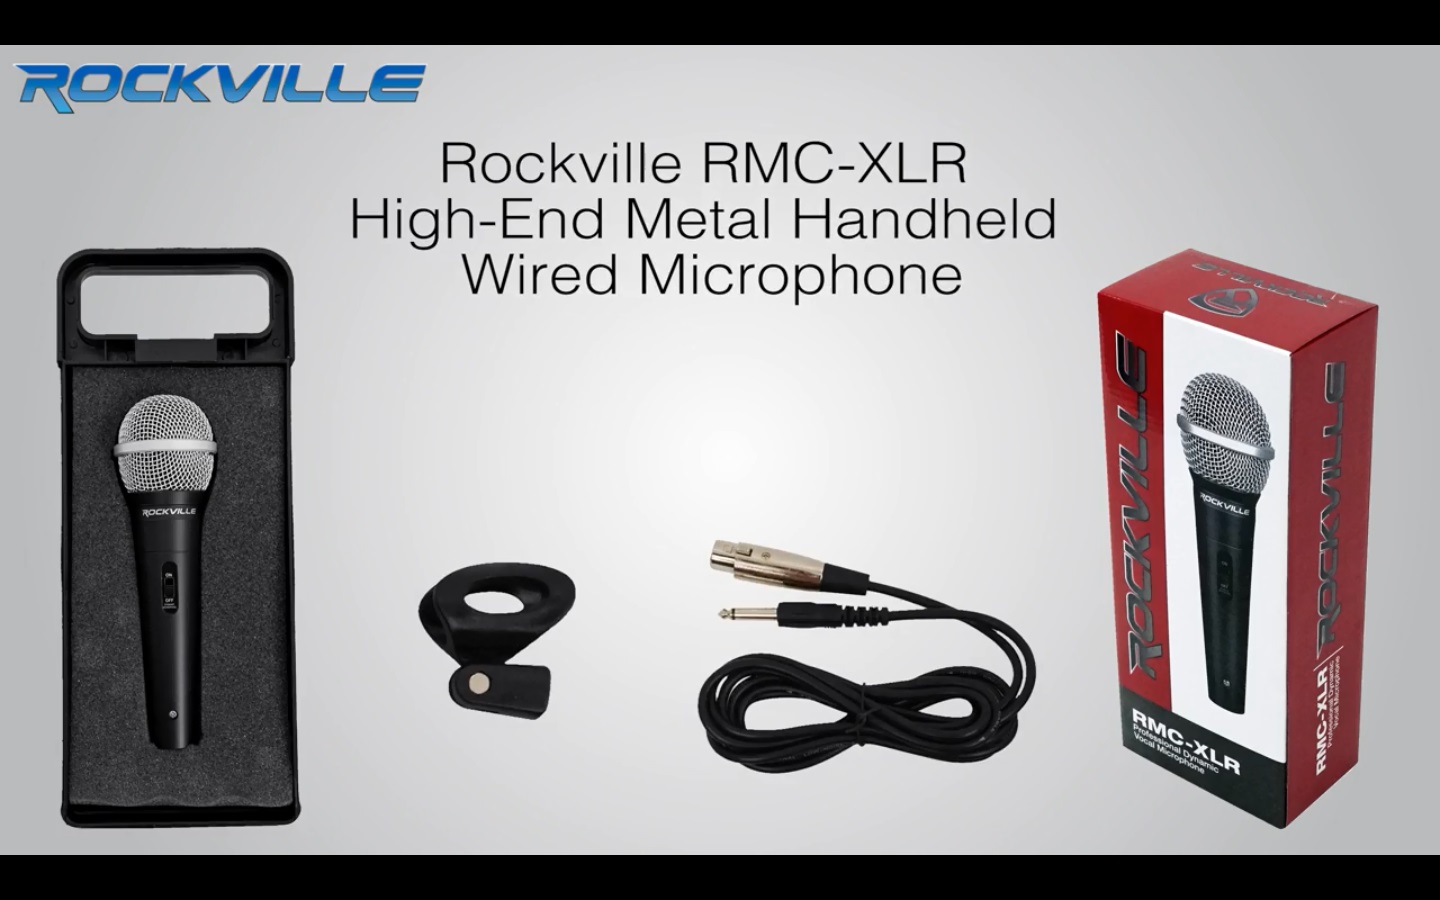 Hercules DJ CONTROL INPULSE 300 8-Pad DJ Controller w/Sound  Card+Headphones+Mic - Rockville Audio